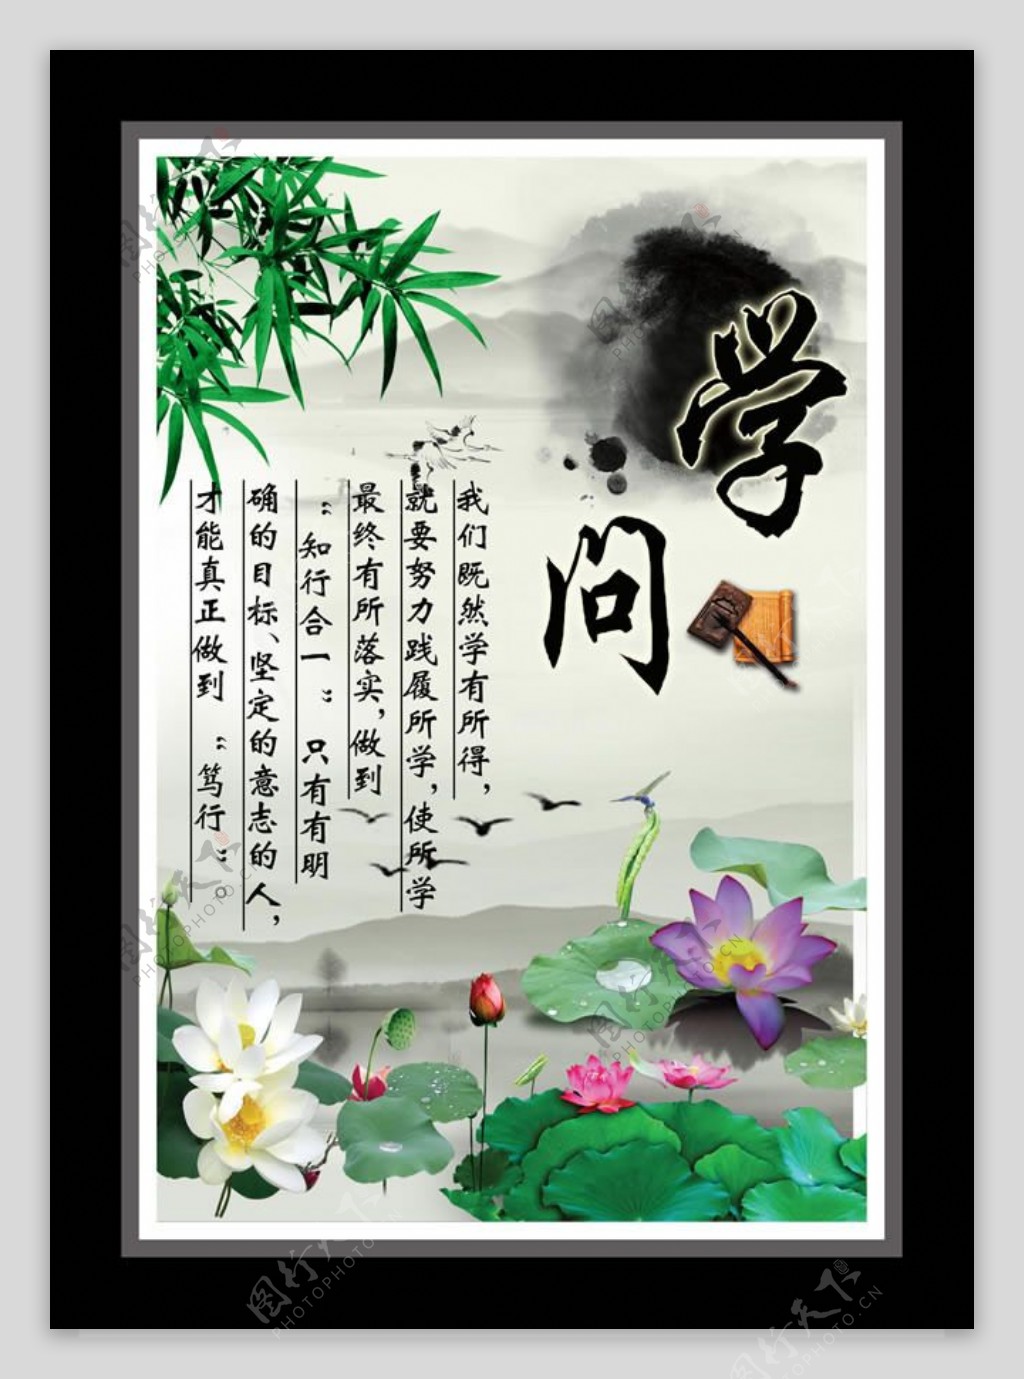 中国传统文化展板PSD素材